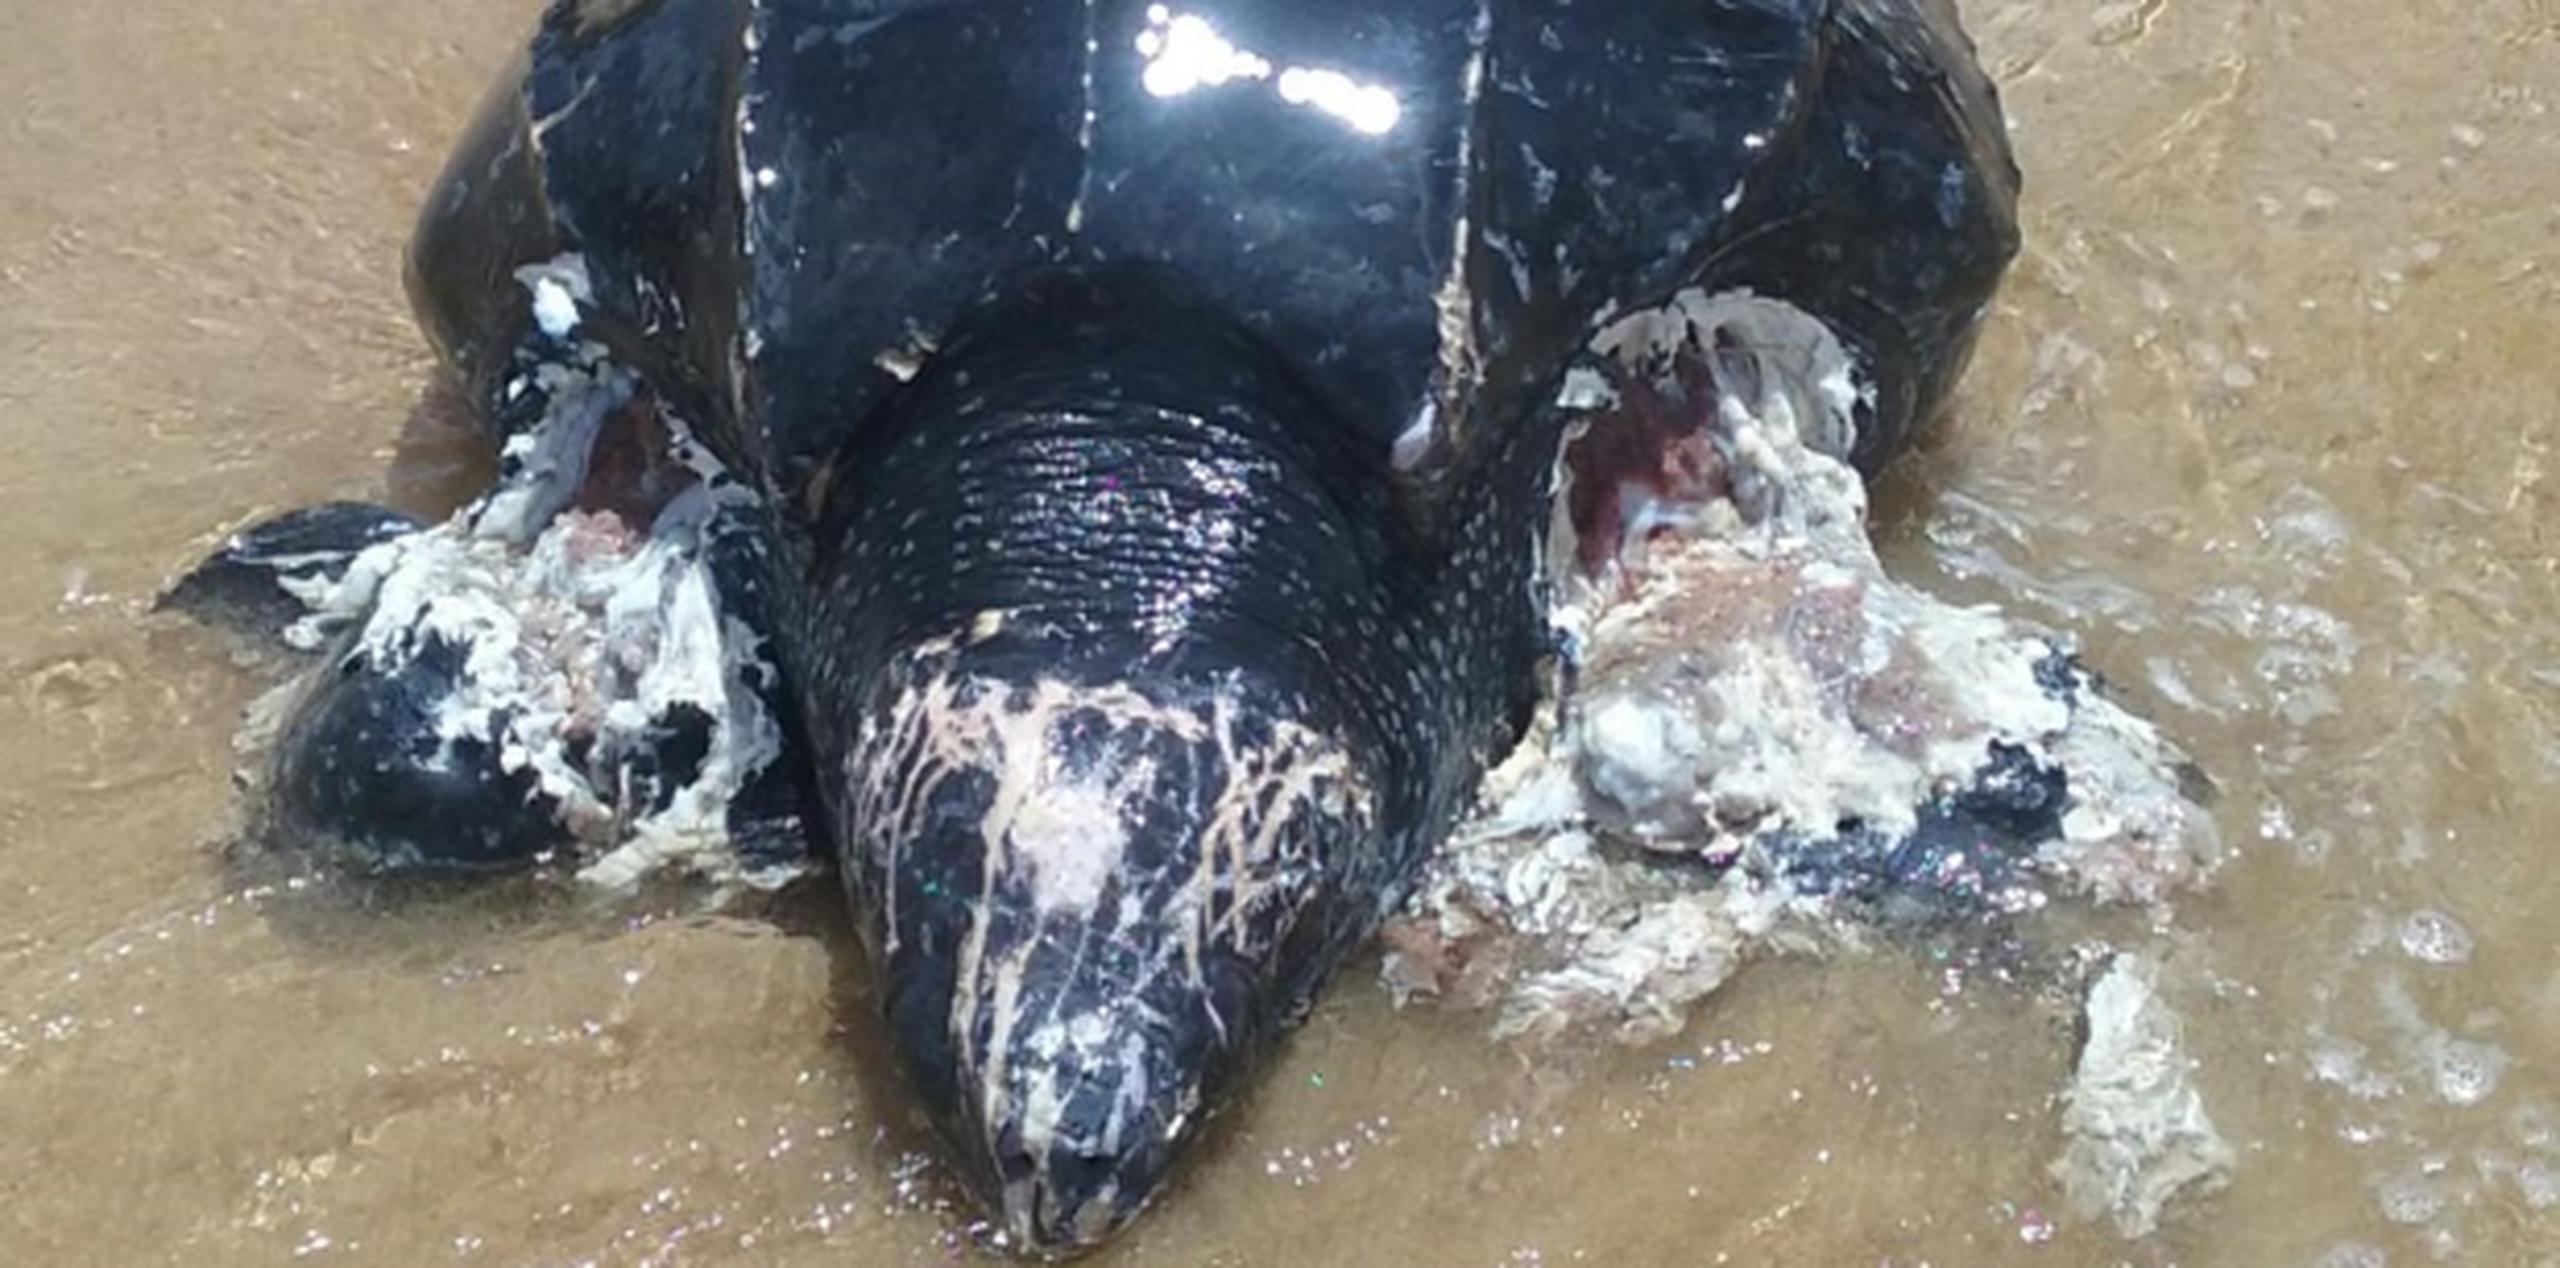 En un principio se pensó en la posibilidad de salvar a la tortuga marina, lamentablemente las heridas fueron graves. (Suministrada)